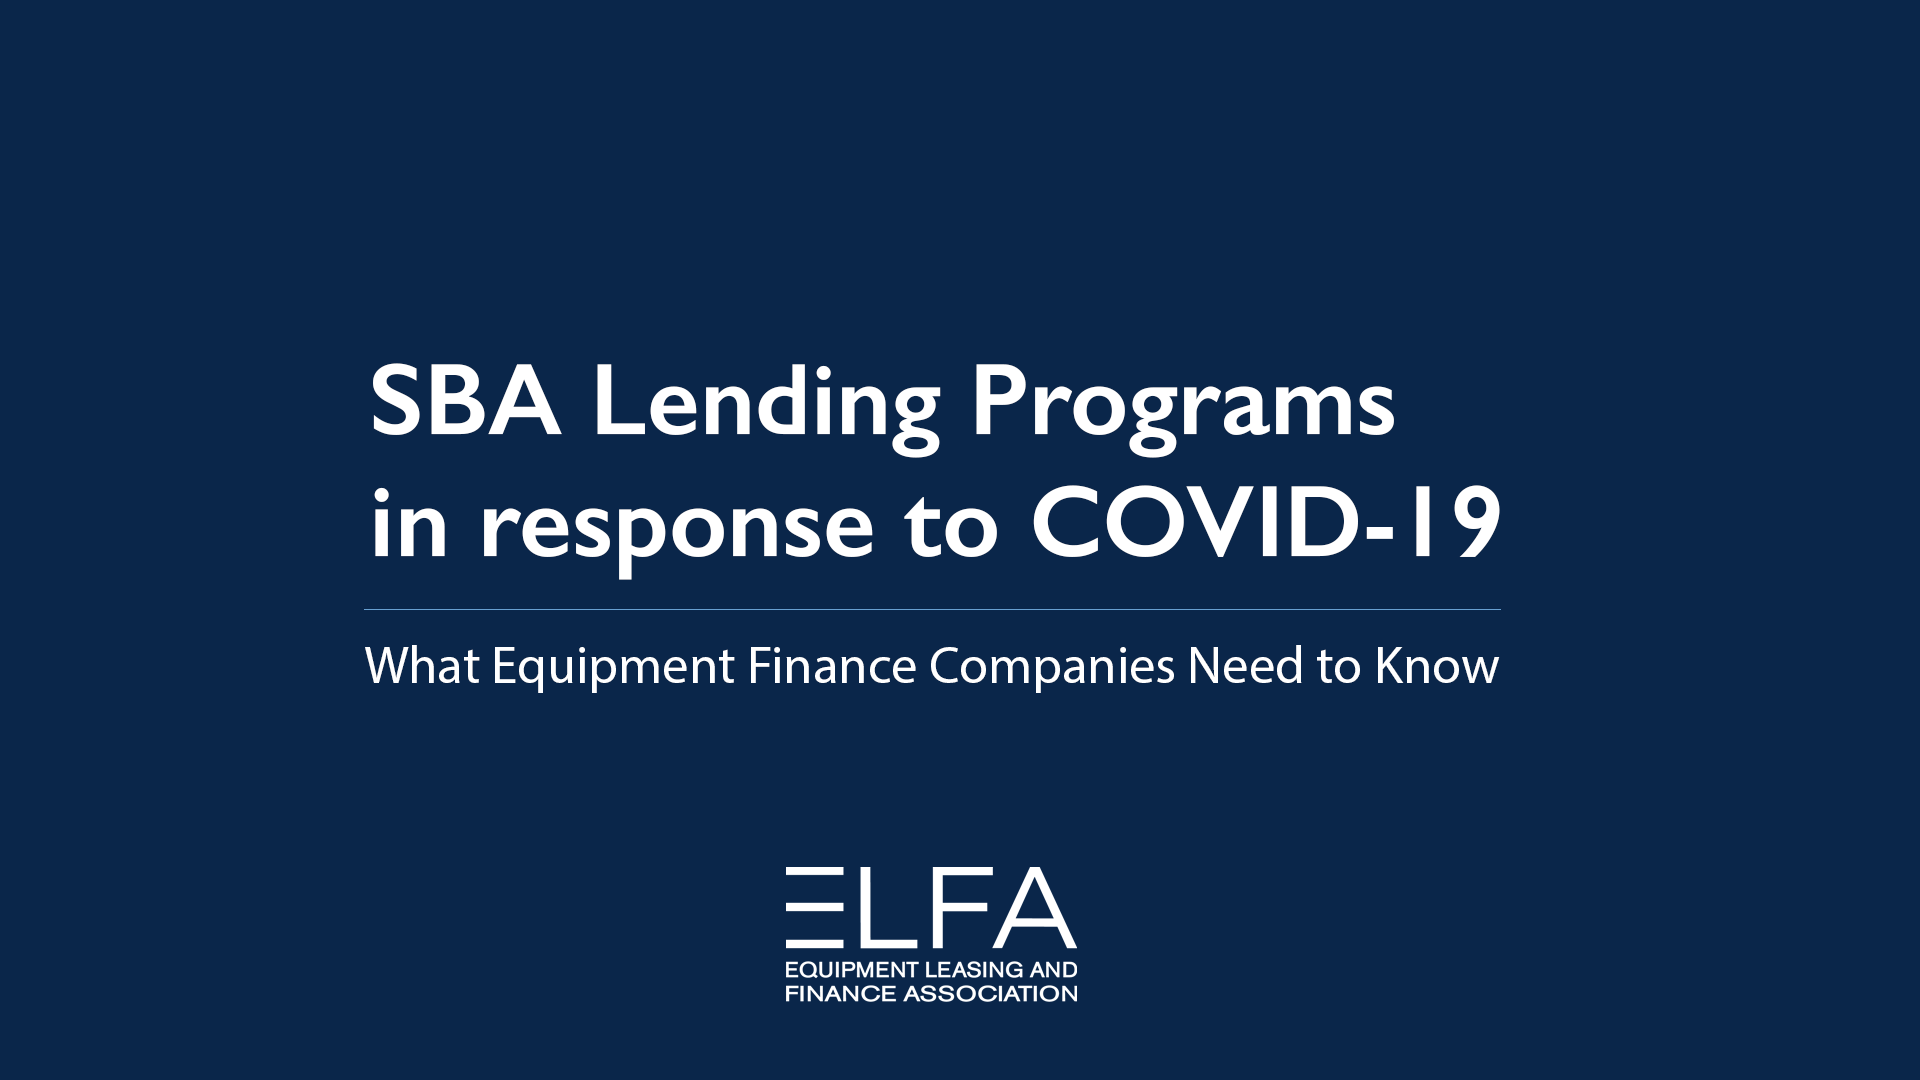 SBA Lending Programs in Response to COVID-19